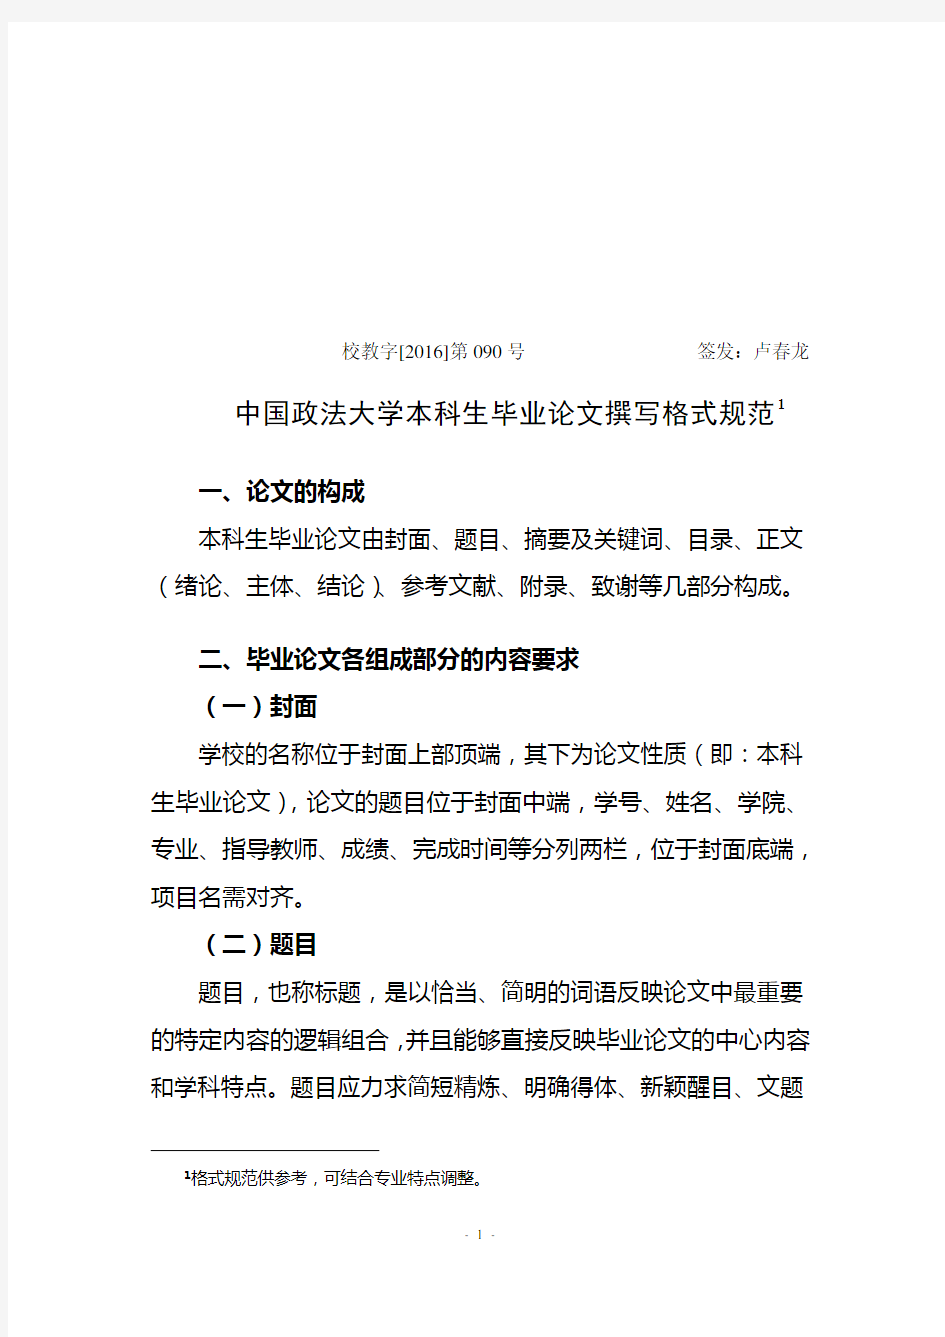 中国政法大学本科毕业论文撰写格式规范-中国政法大学法学院